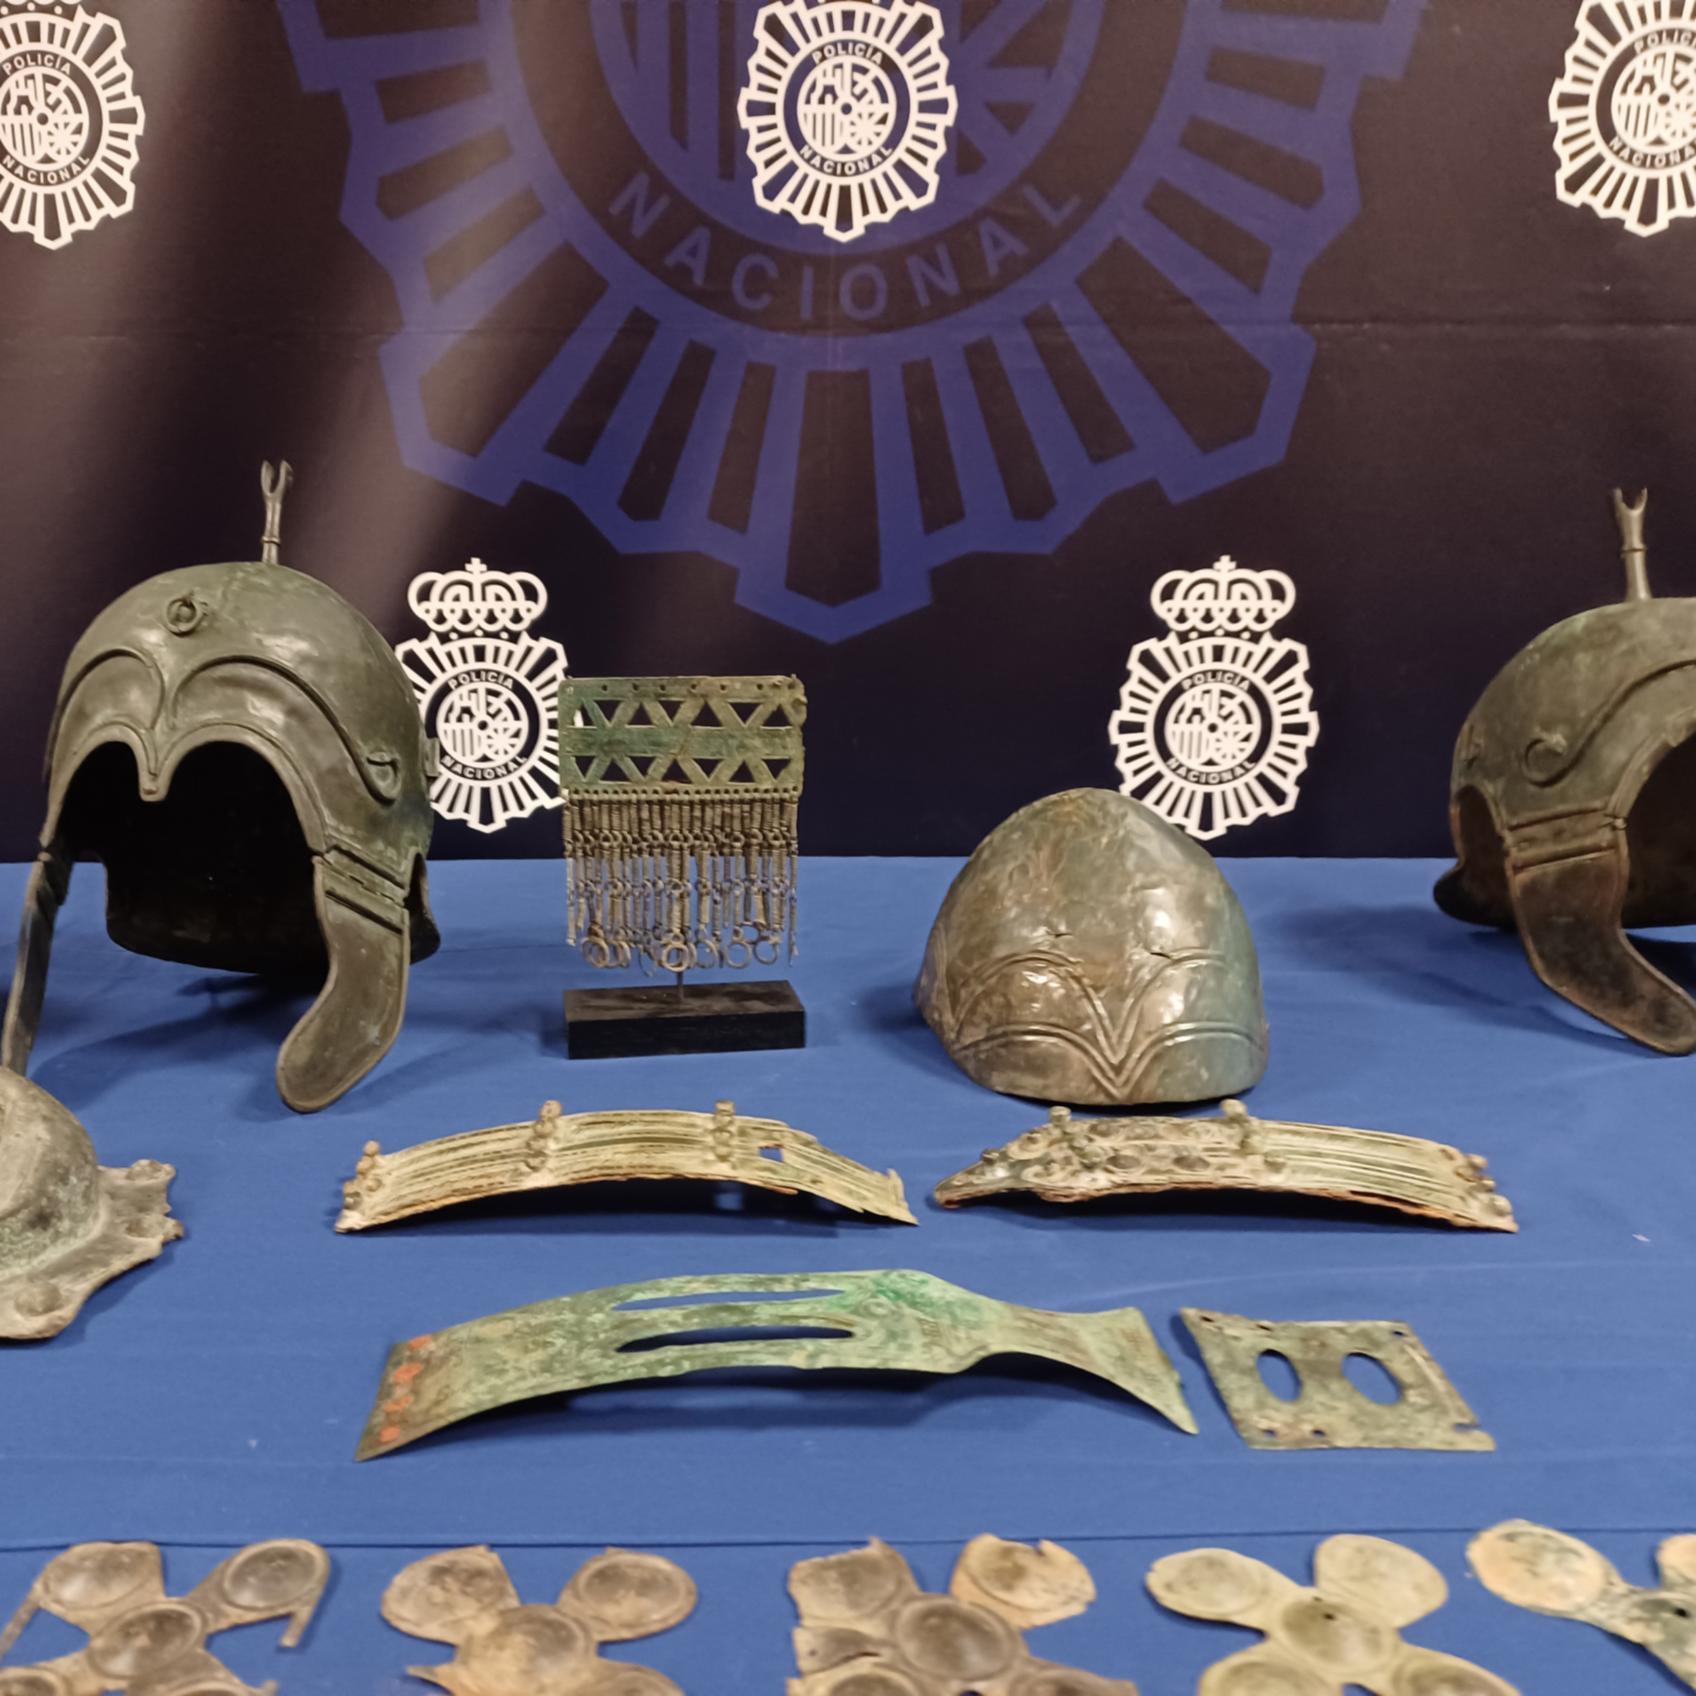 La Policía Nacional detiene al responsable de un museo y recupera 37 relevantes piezas arqueológicas de origen ilícito